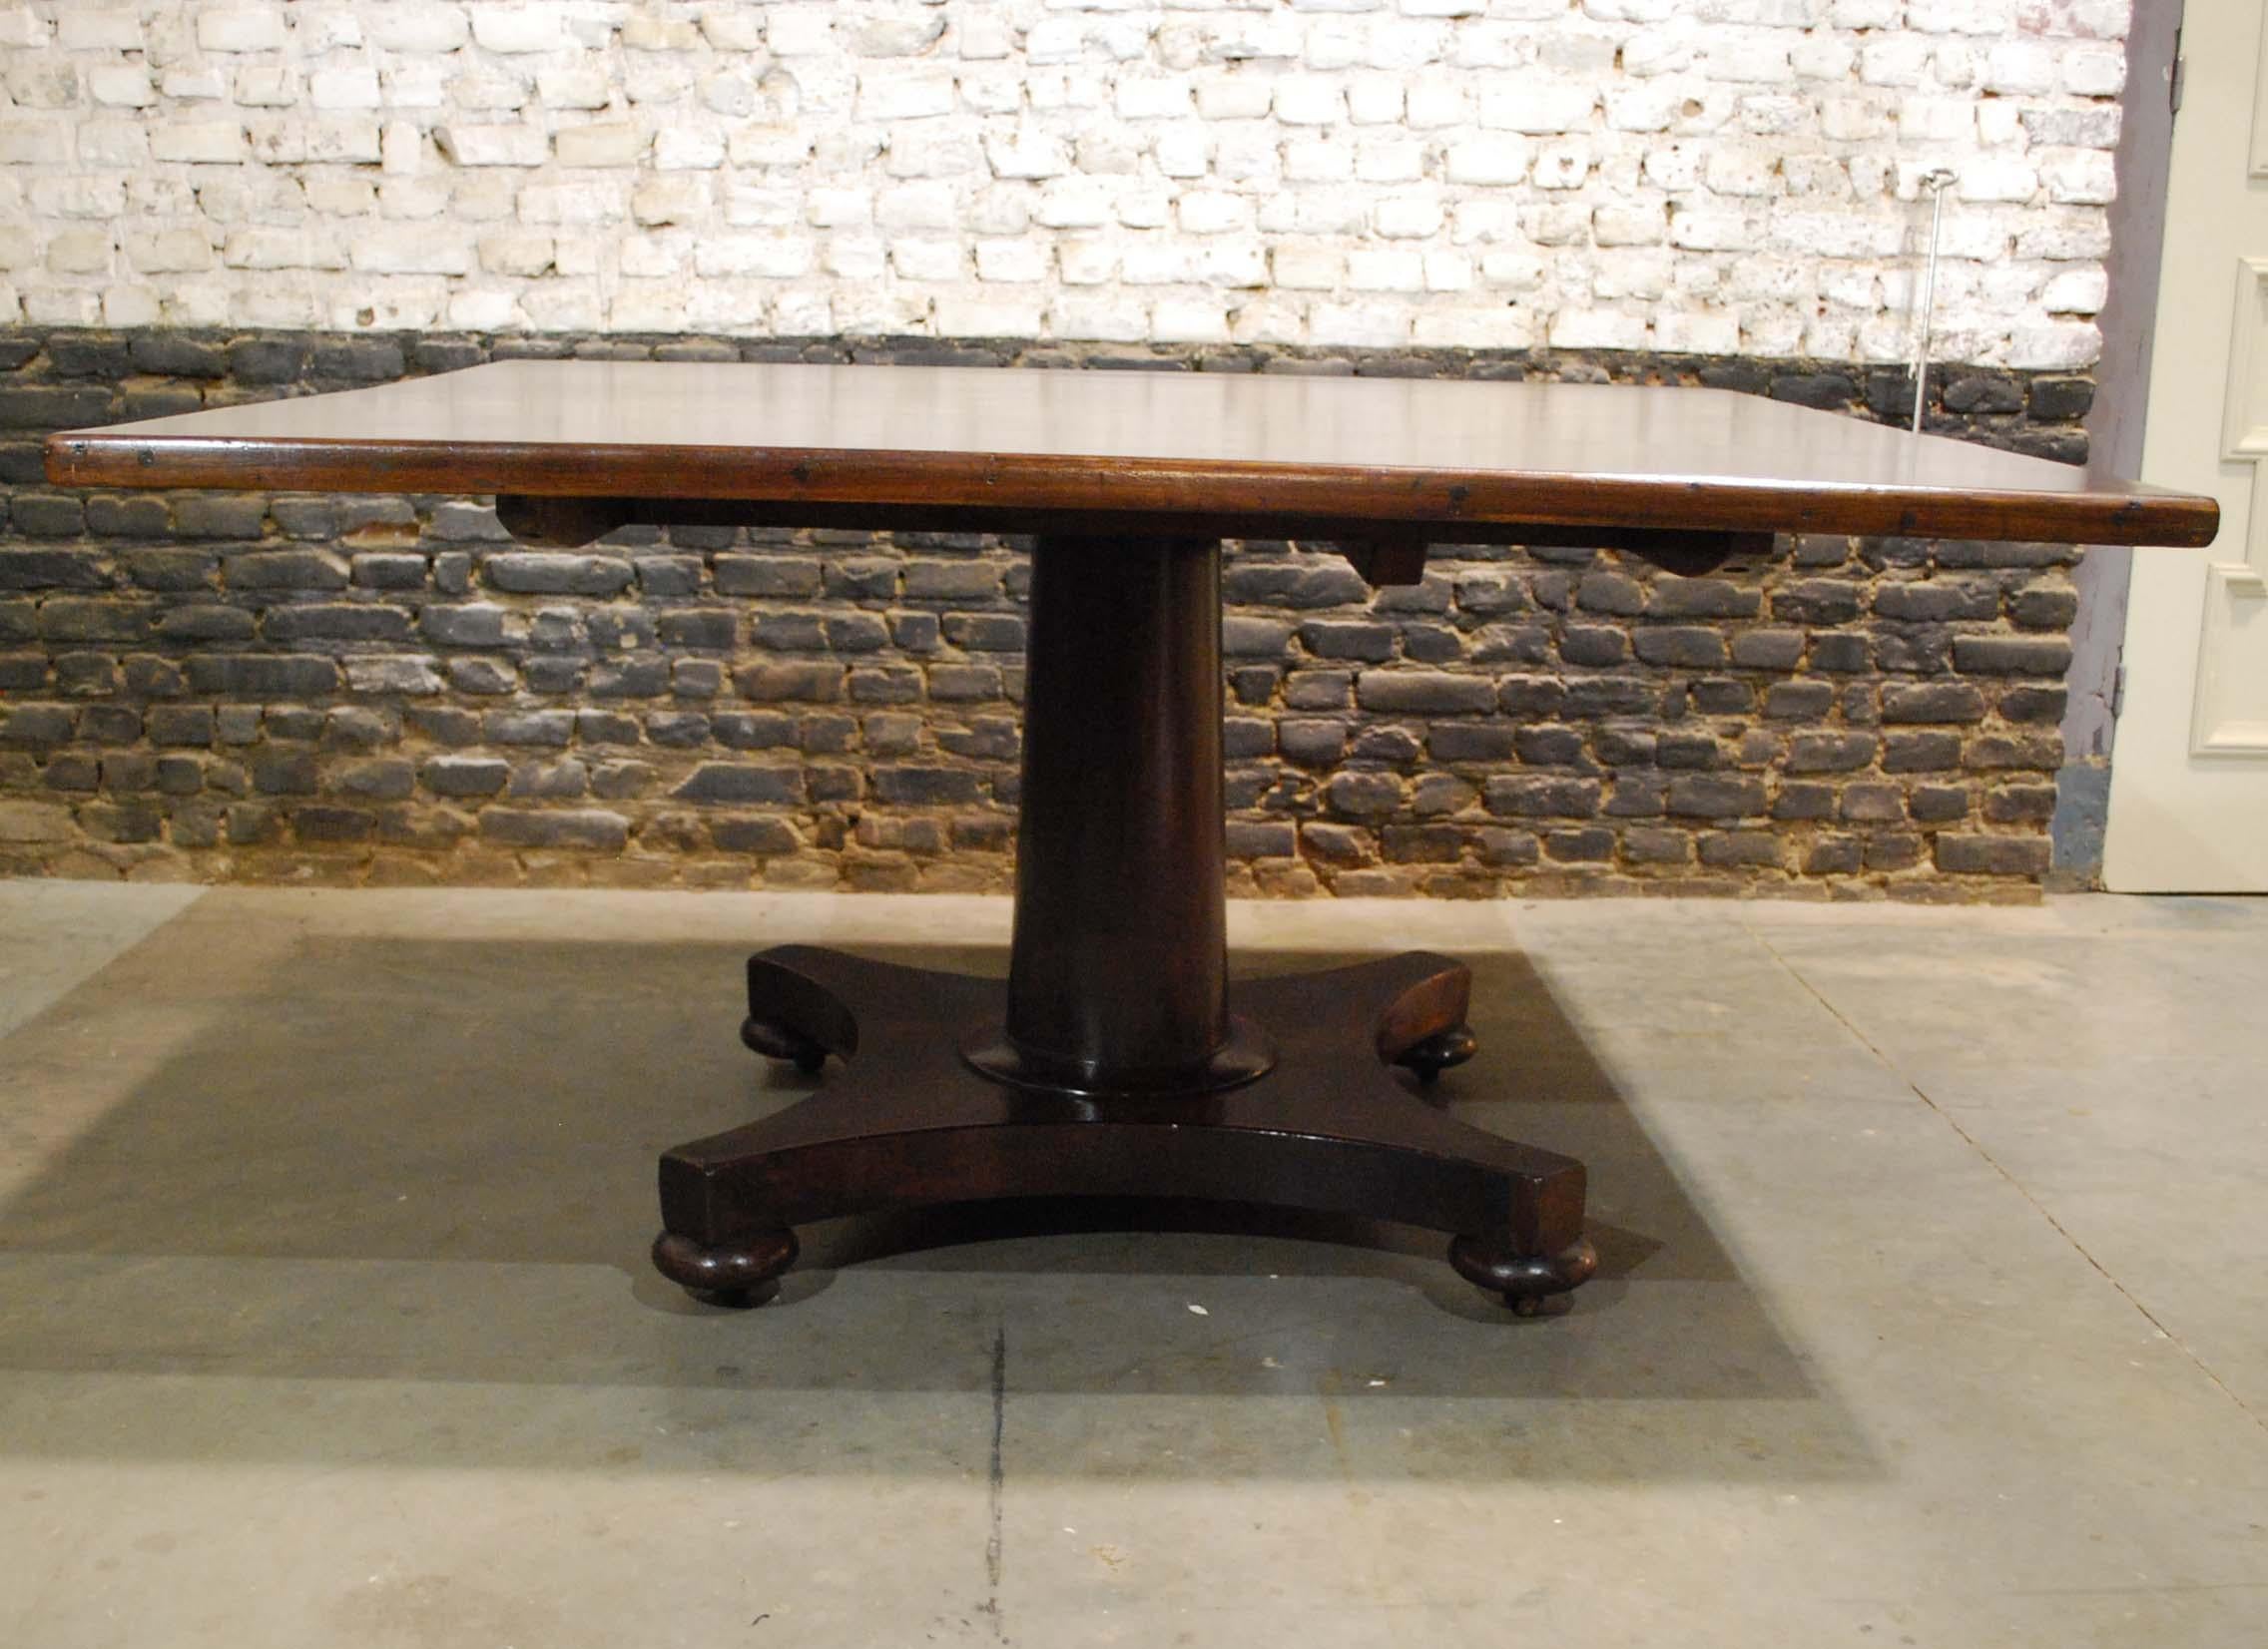 Dieser schöne große quadratische Tisch mit kippbarer Platte wurde um 1850 in England hergestellt. Die Decke ist aus echtem Mahagoni mit vertikaler Maserung gefertigt. Die Platte ist 1,38 Zoll dick und misst 55,71 mal 52,36 Zoll. Die Platte ist schön